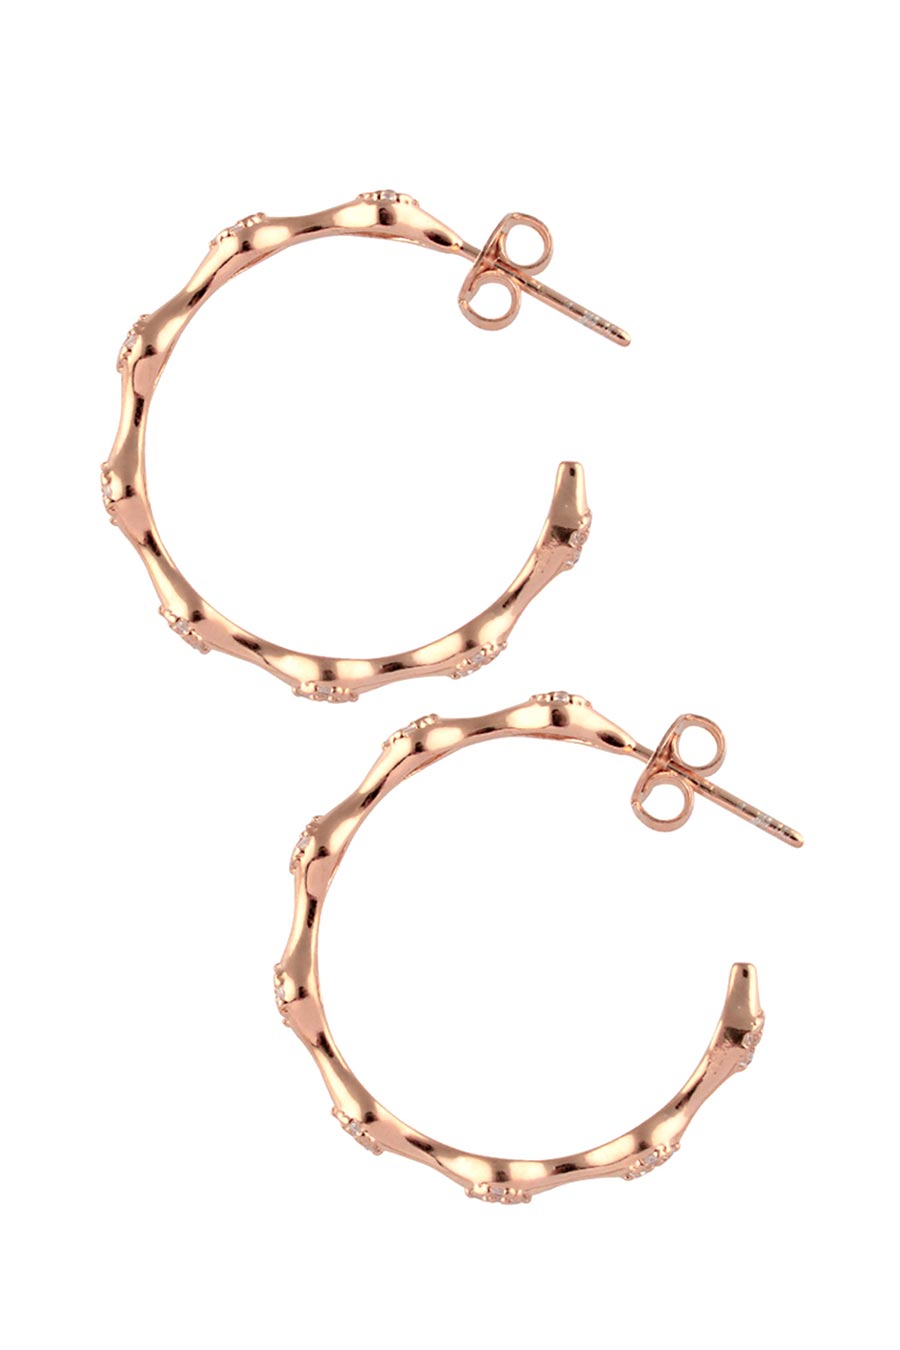 Enchnated Infinity Rose Gold Hoop Earrings